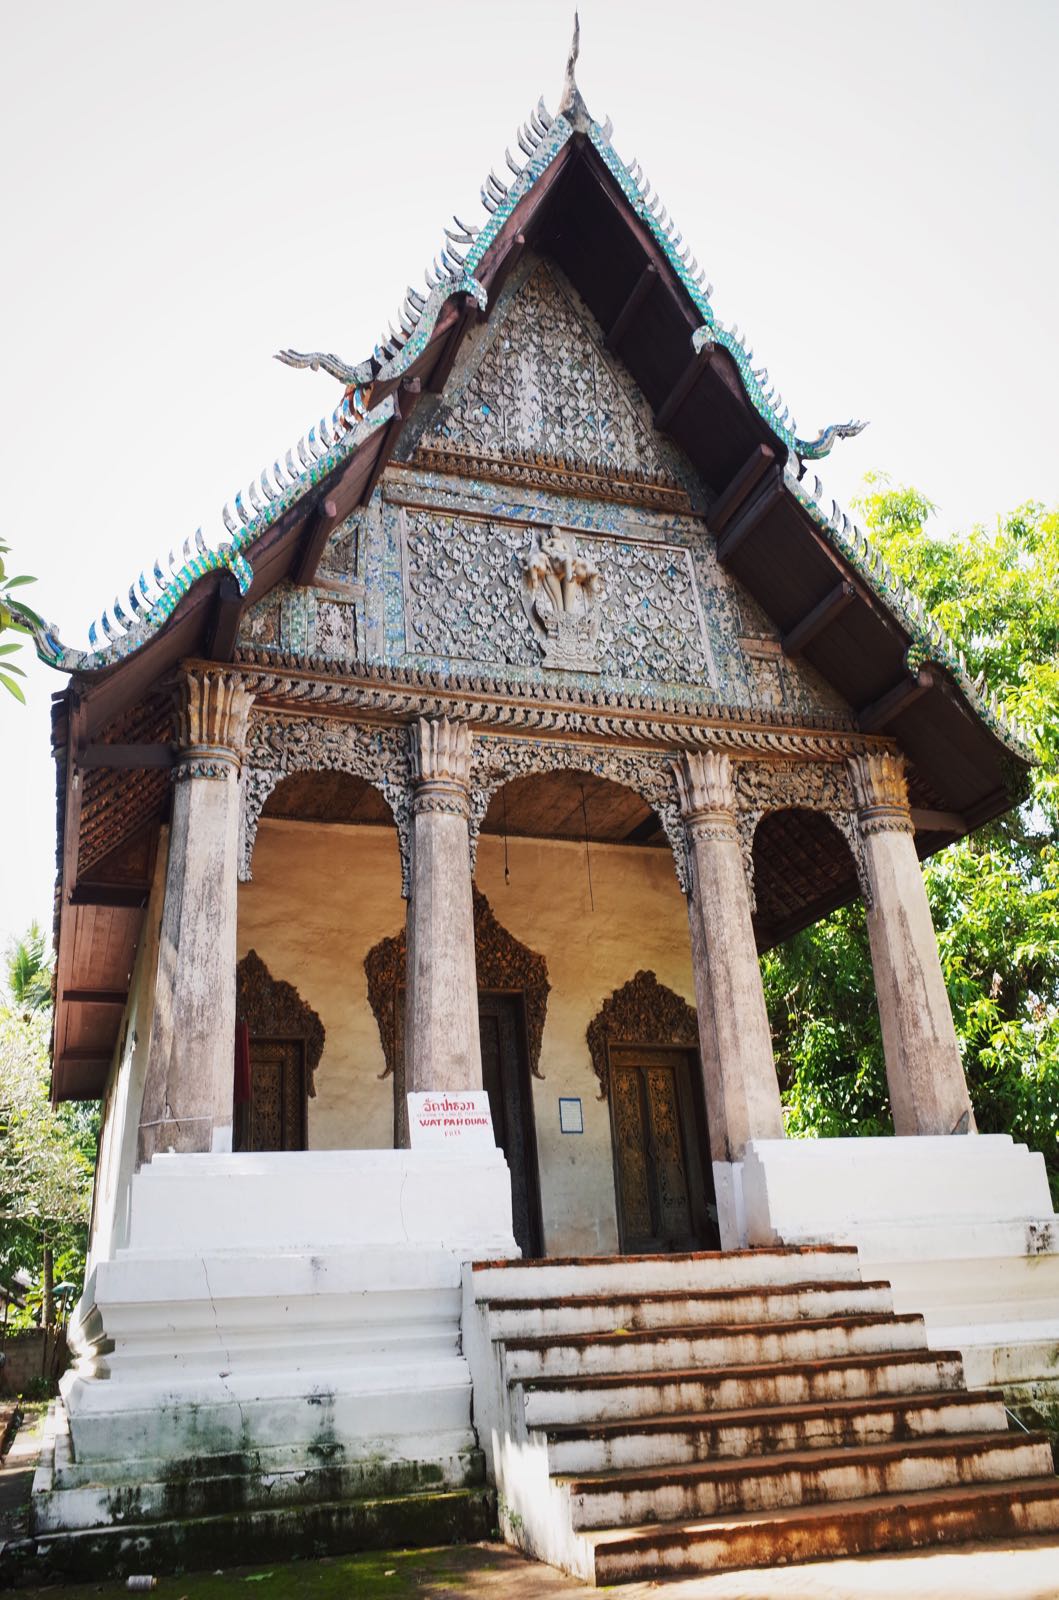 帕华寺始建于1861年，殿内有很精美的壁画，历史也已超过百年。尽管坐落